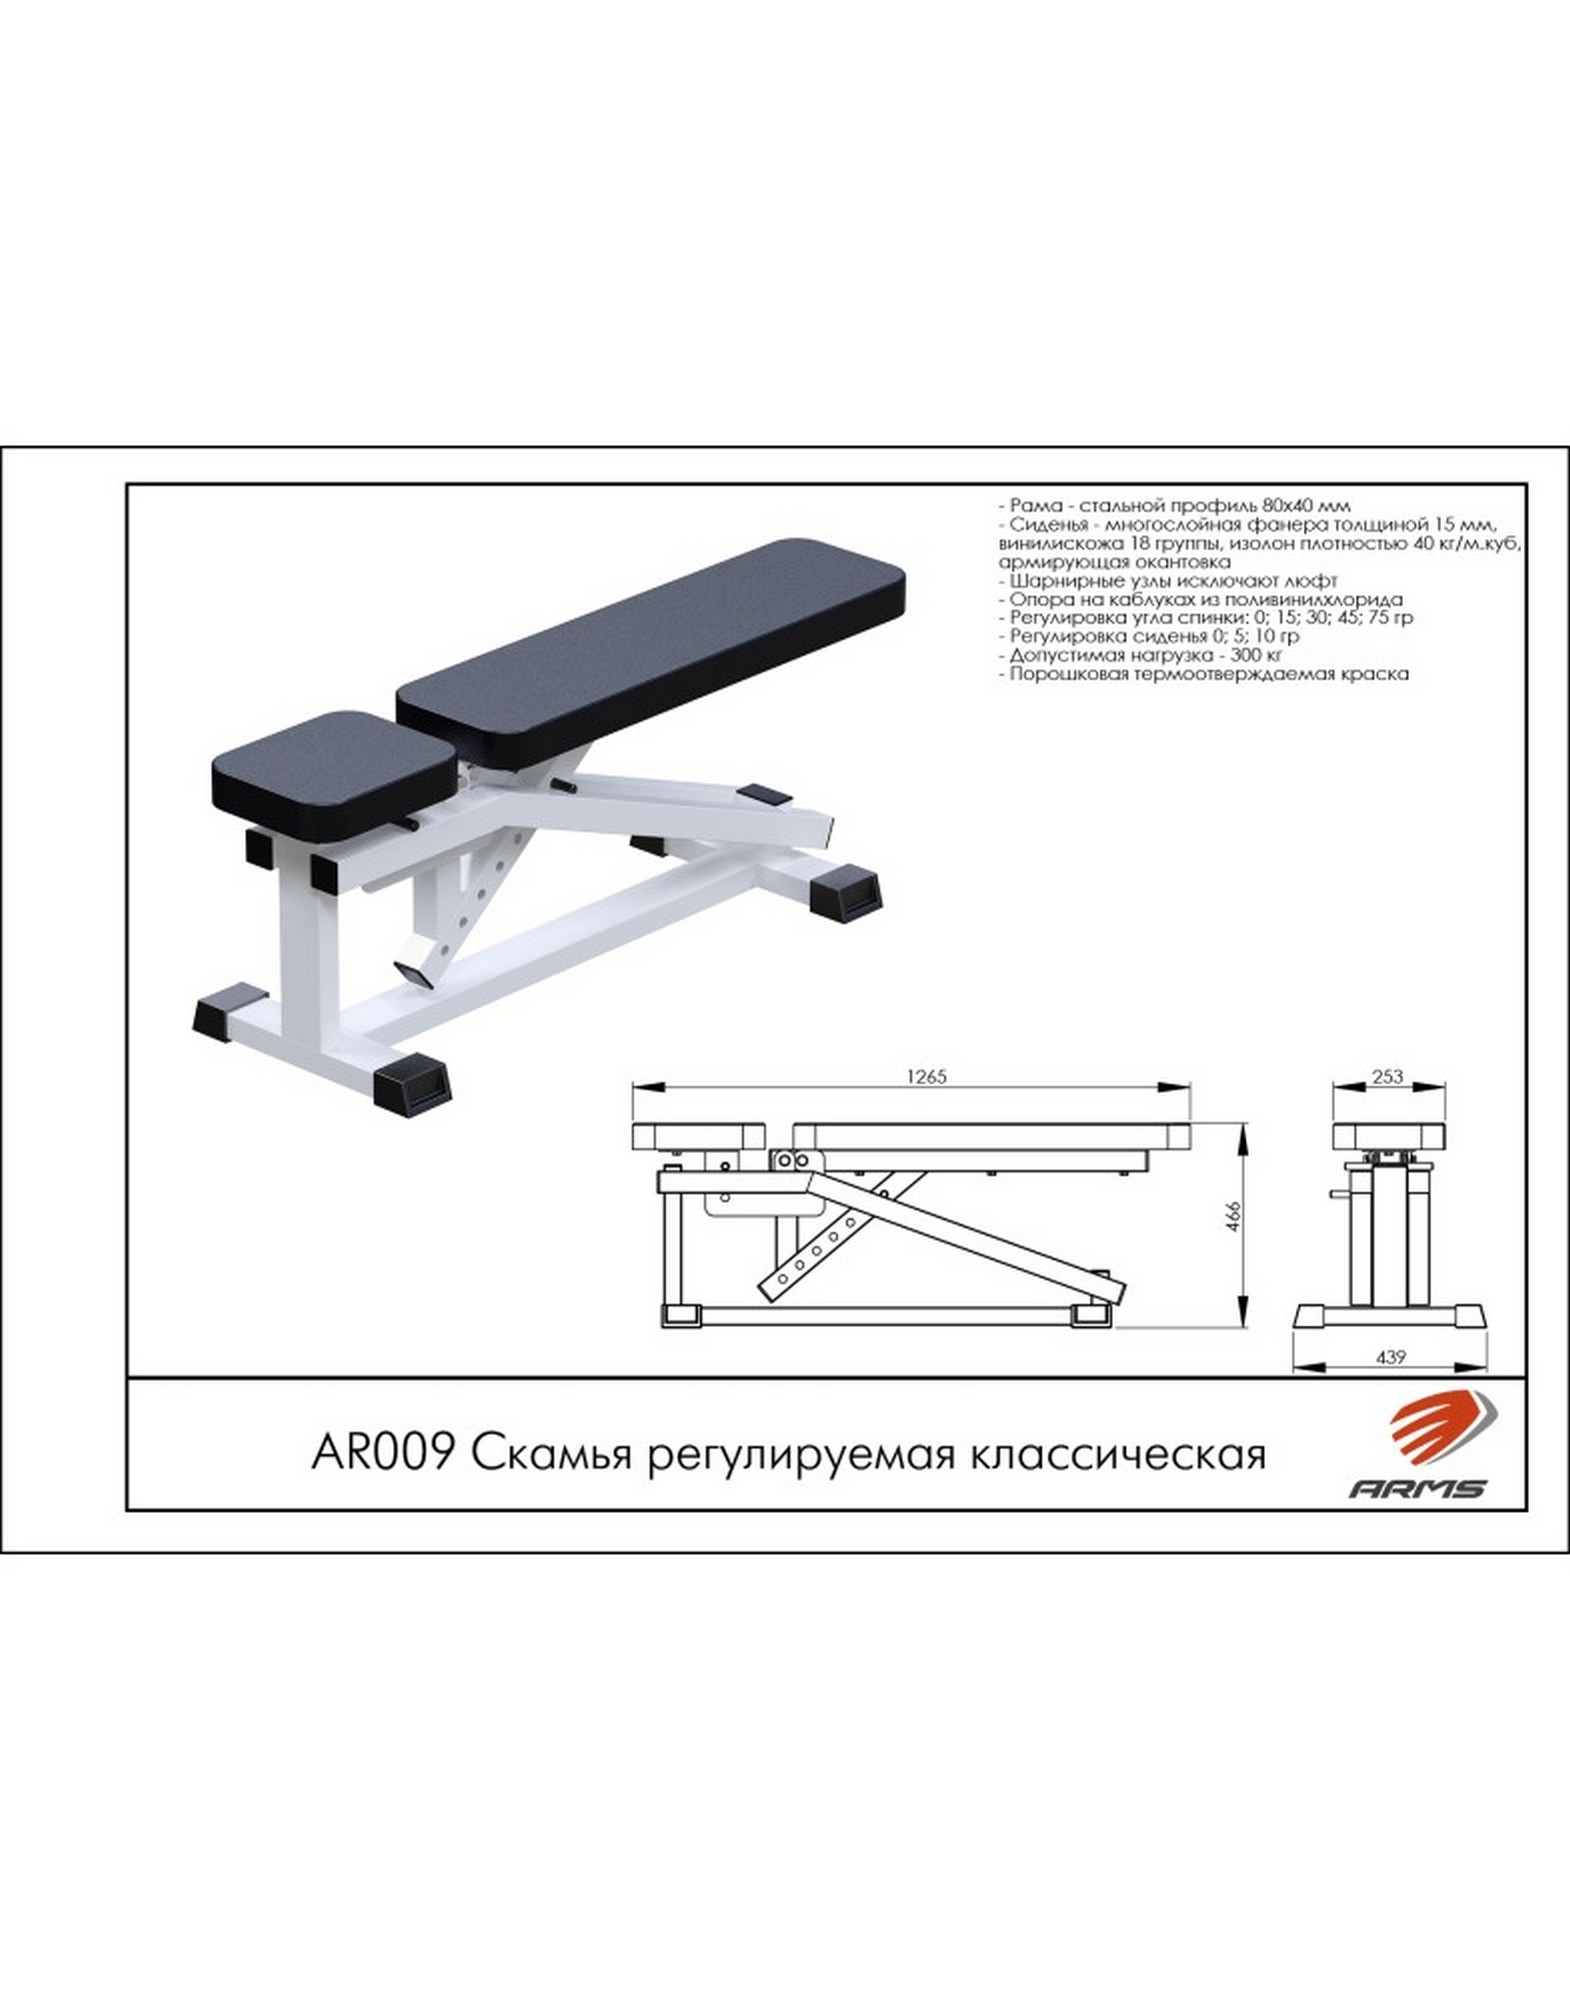 Скамья регулируемая классическая ARMS AR009 1570_2000